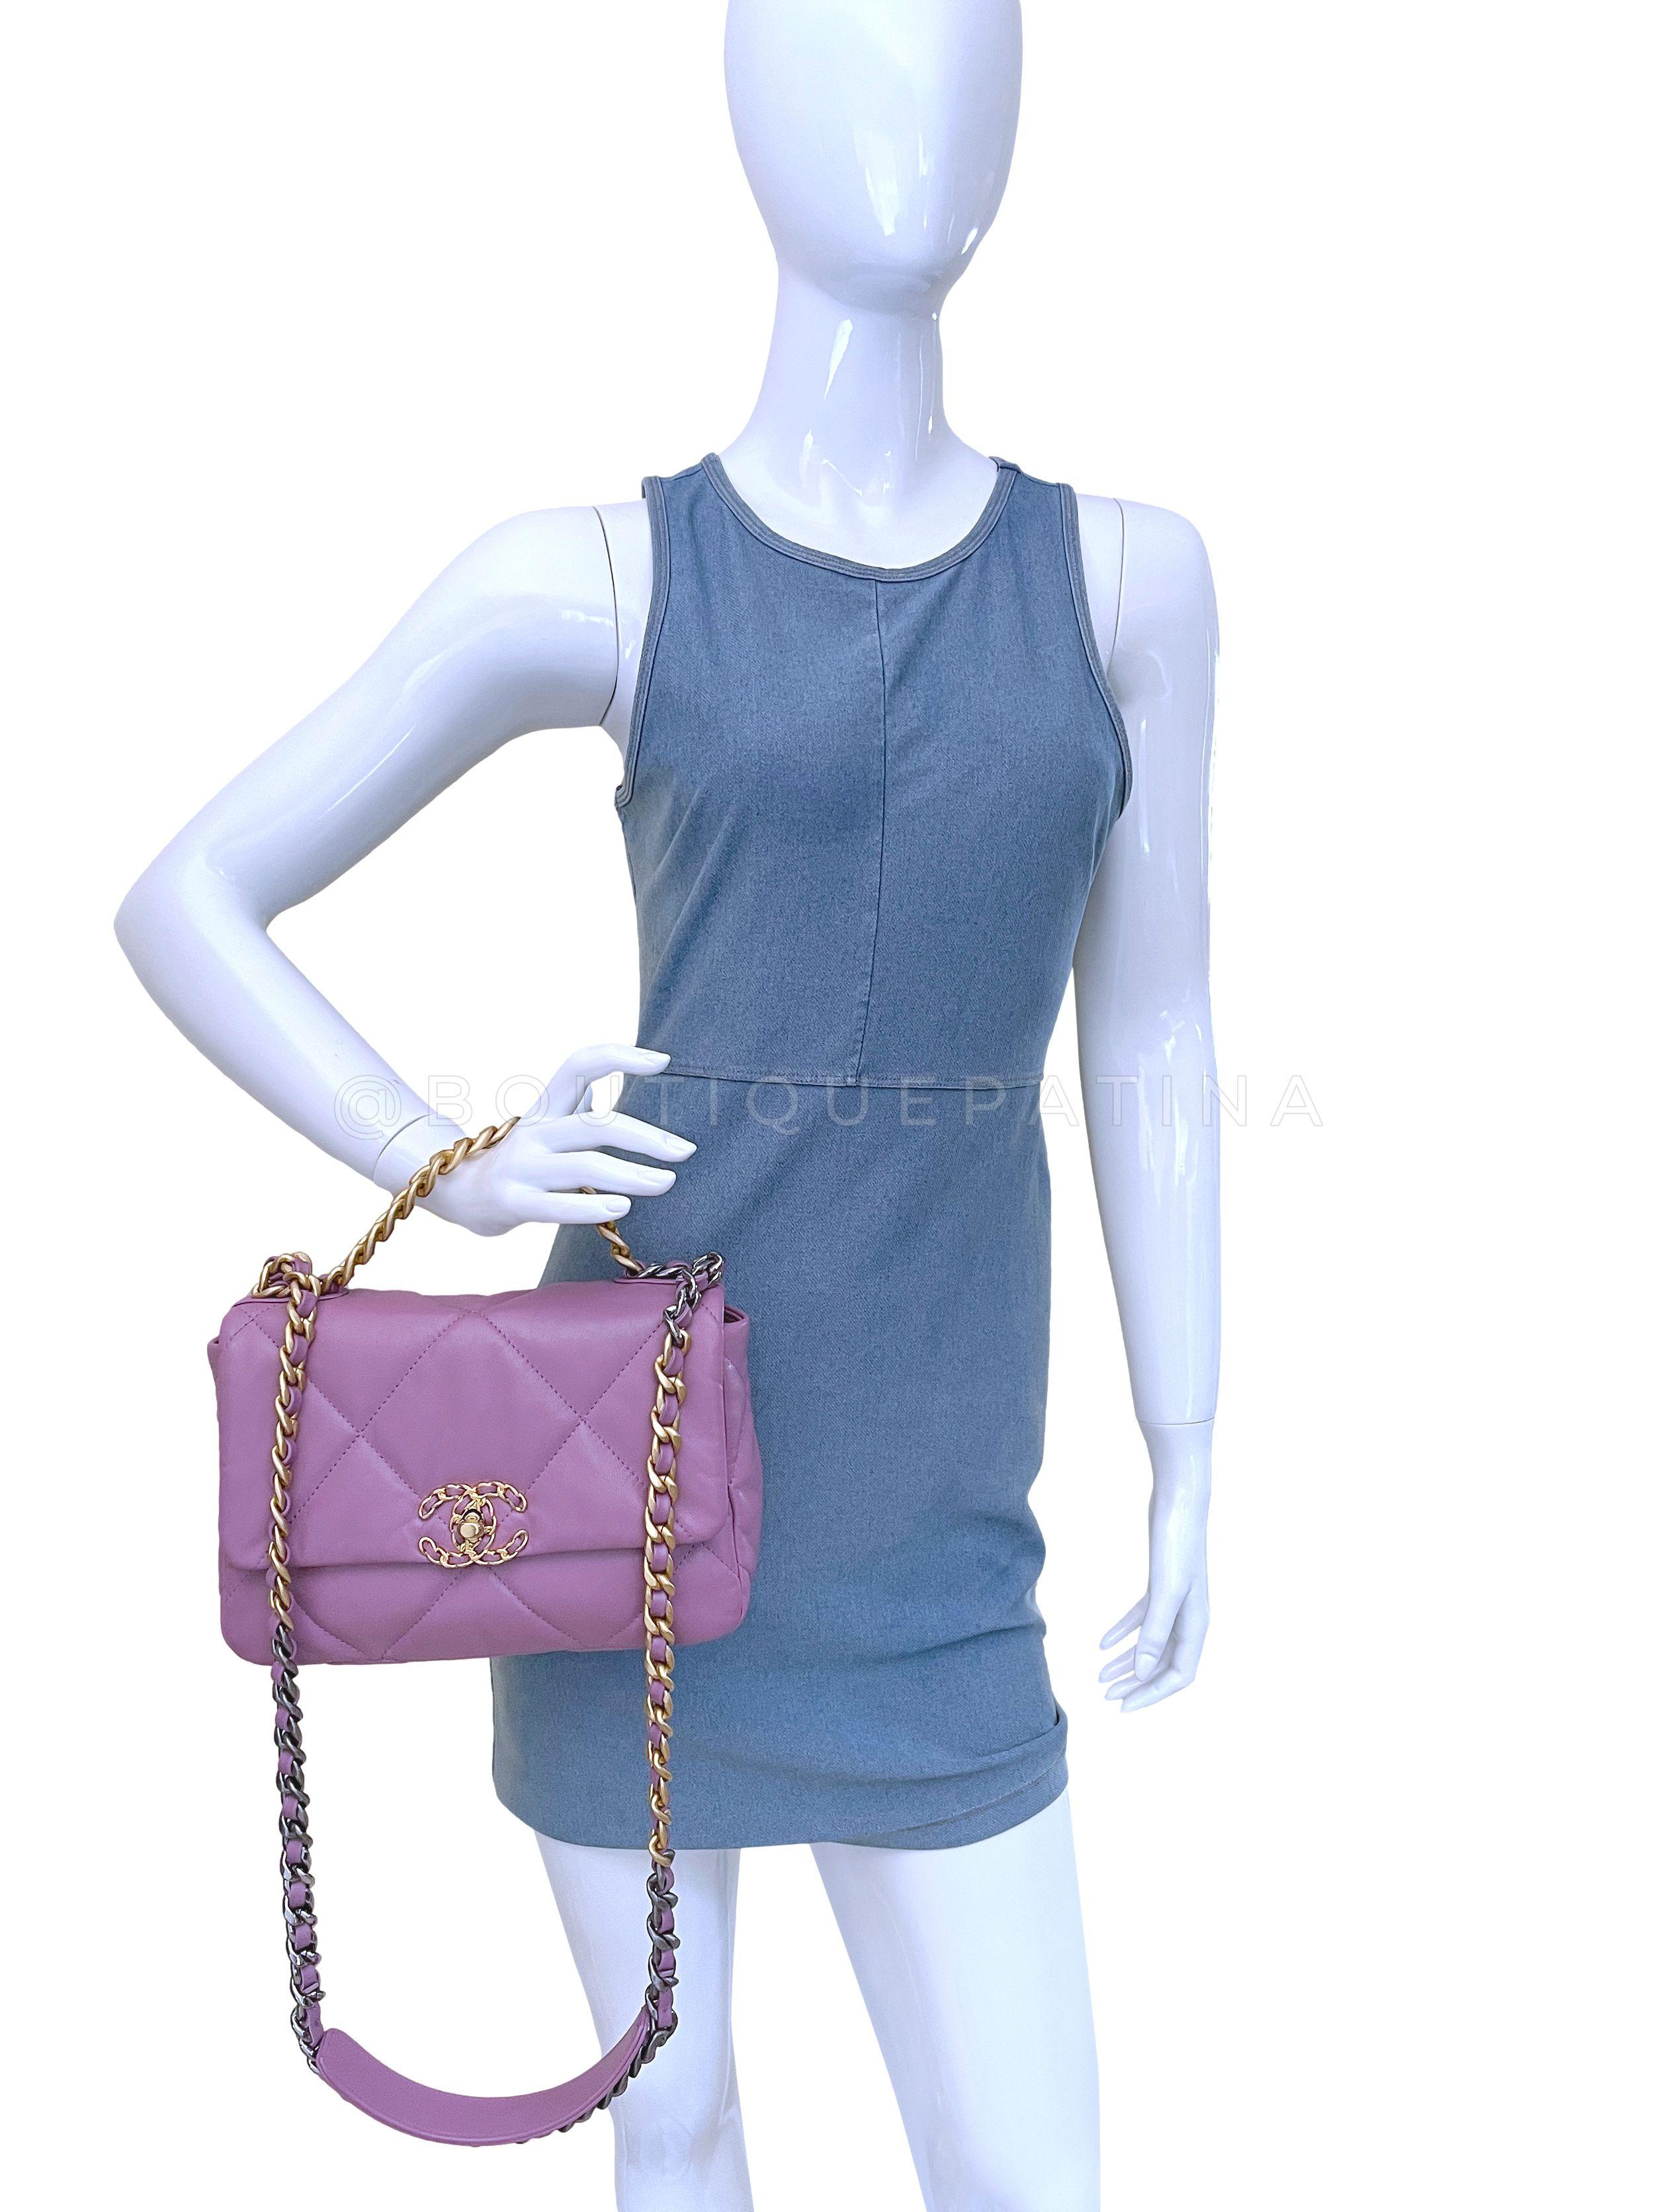 Chanel 19 20B Lavender Mauve Medium Flap Bag 65463 For Sale 9